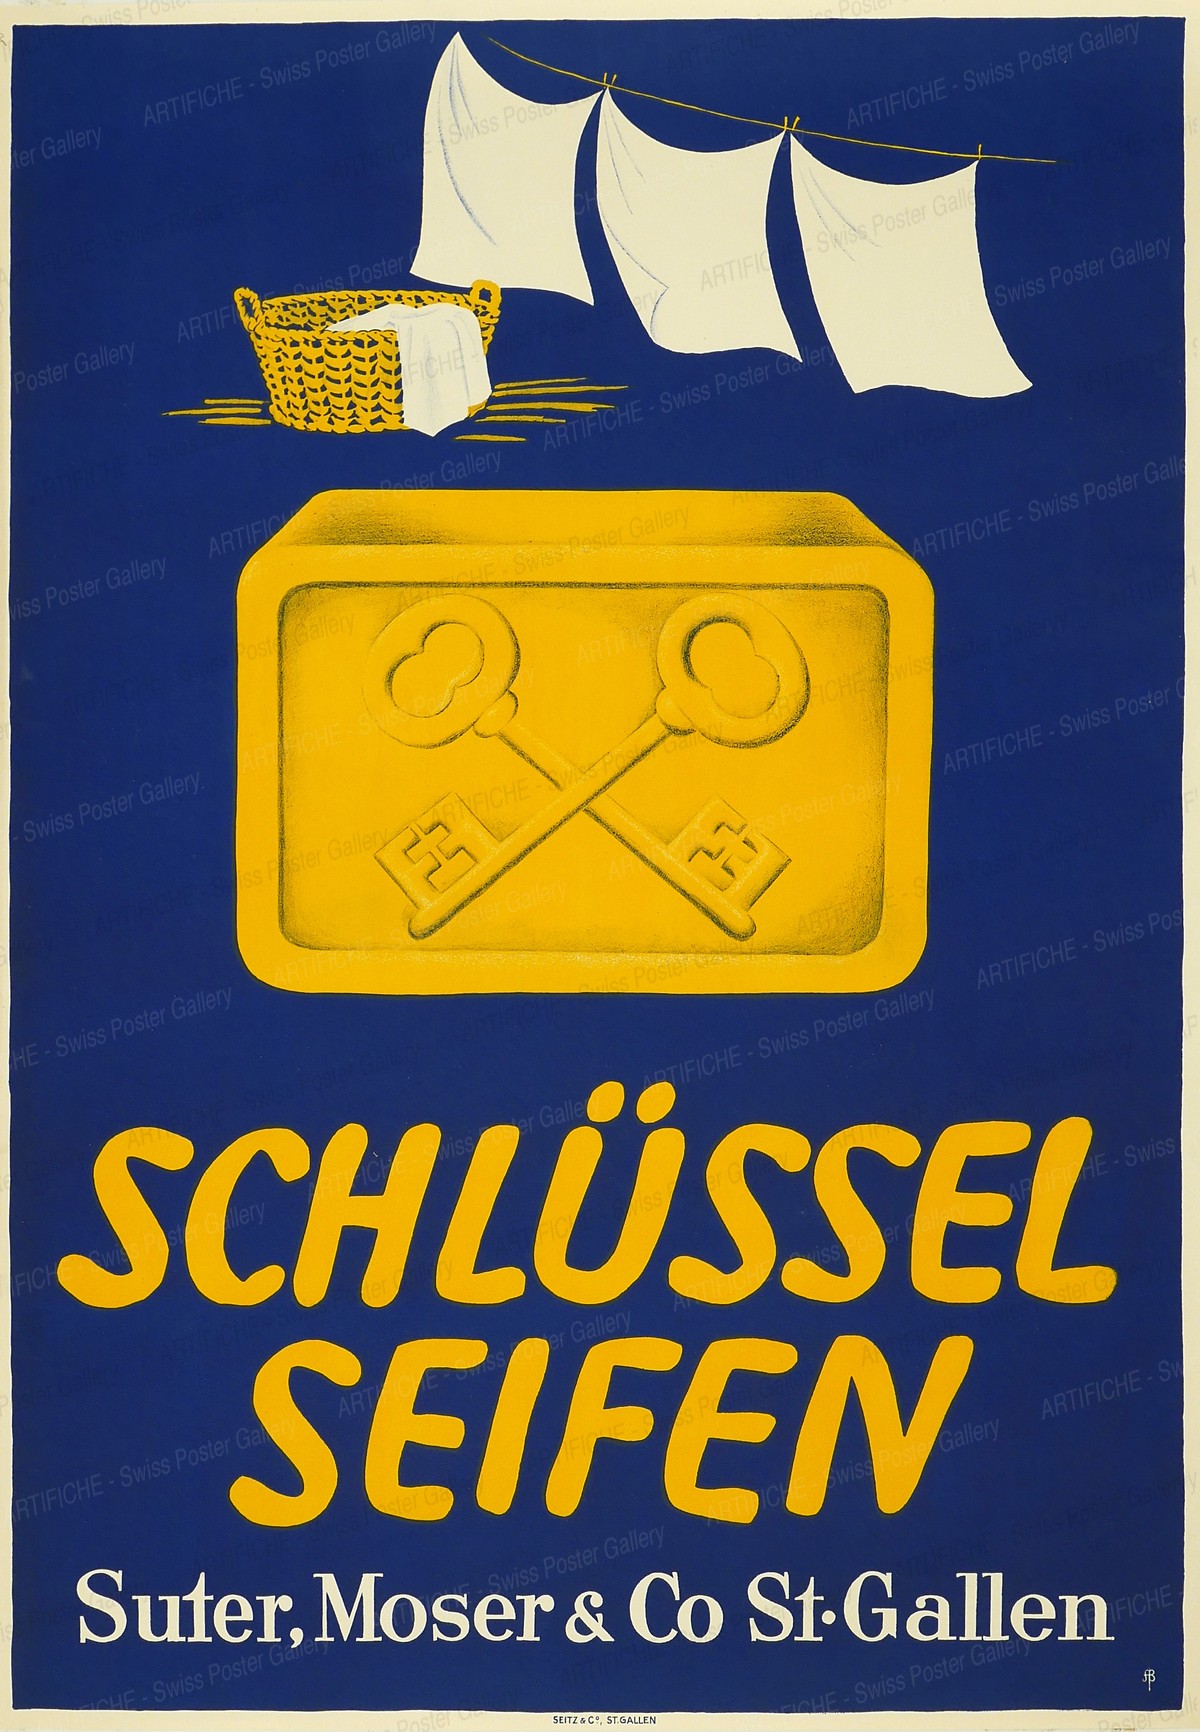 Schlüssel Seifen – Suter, Moser & Co St. Gallen